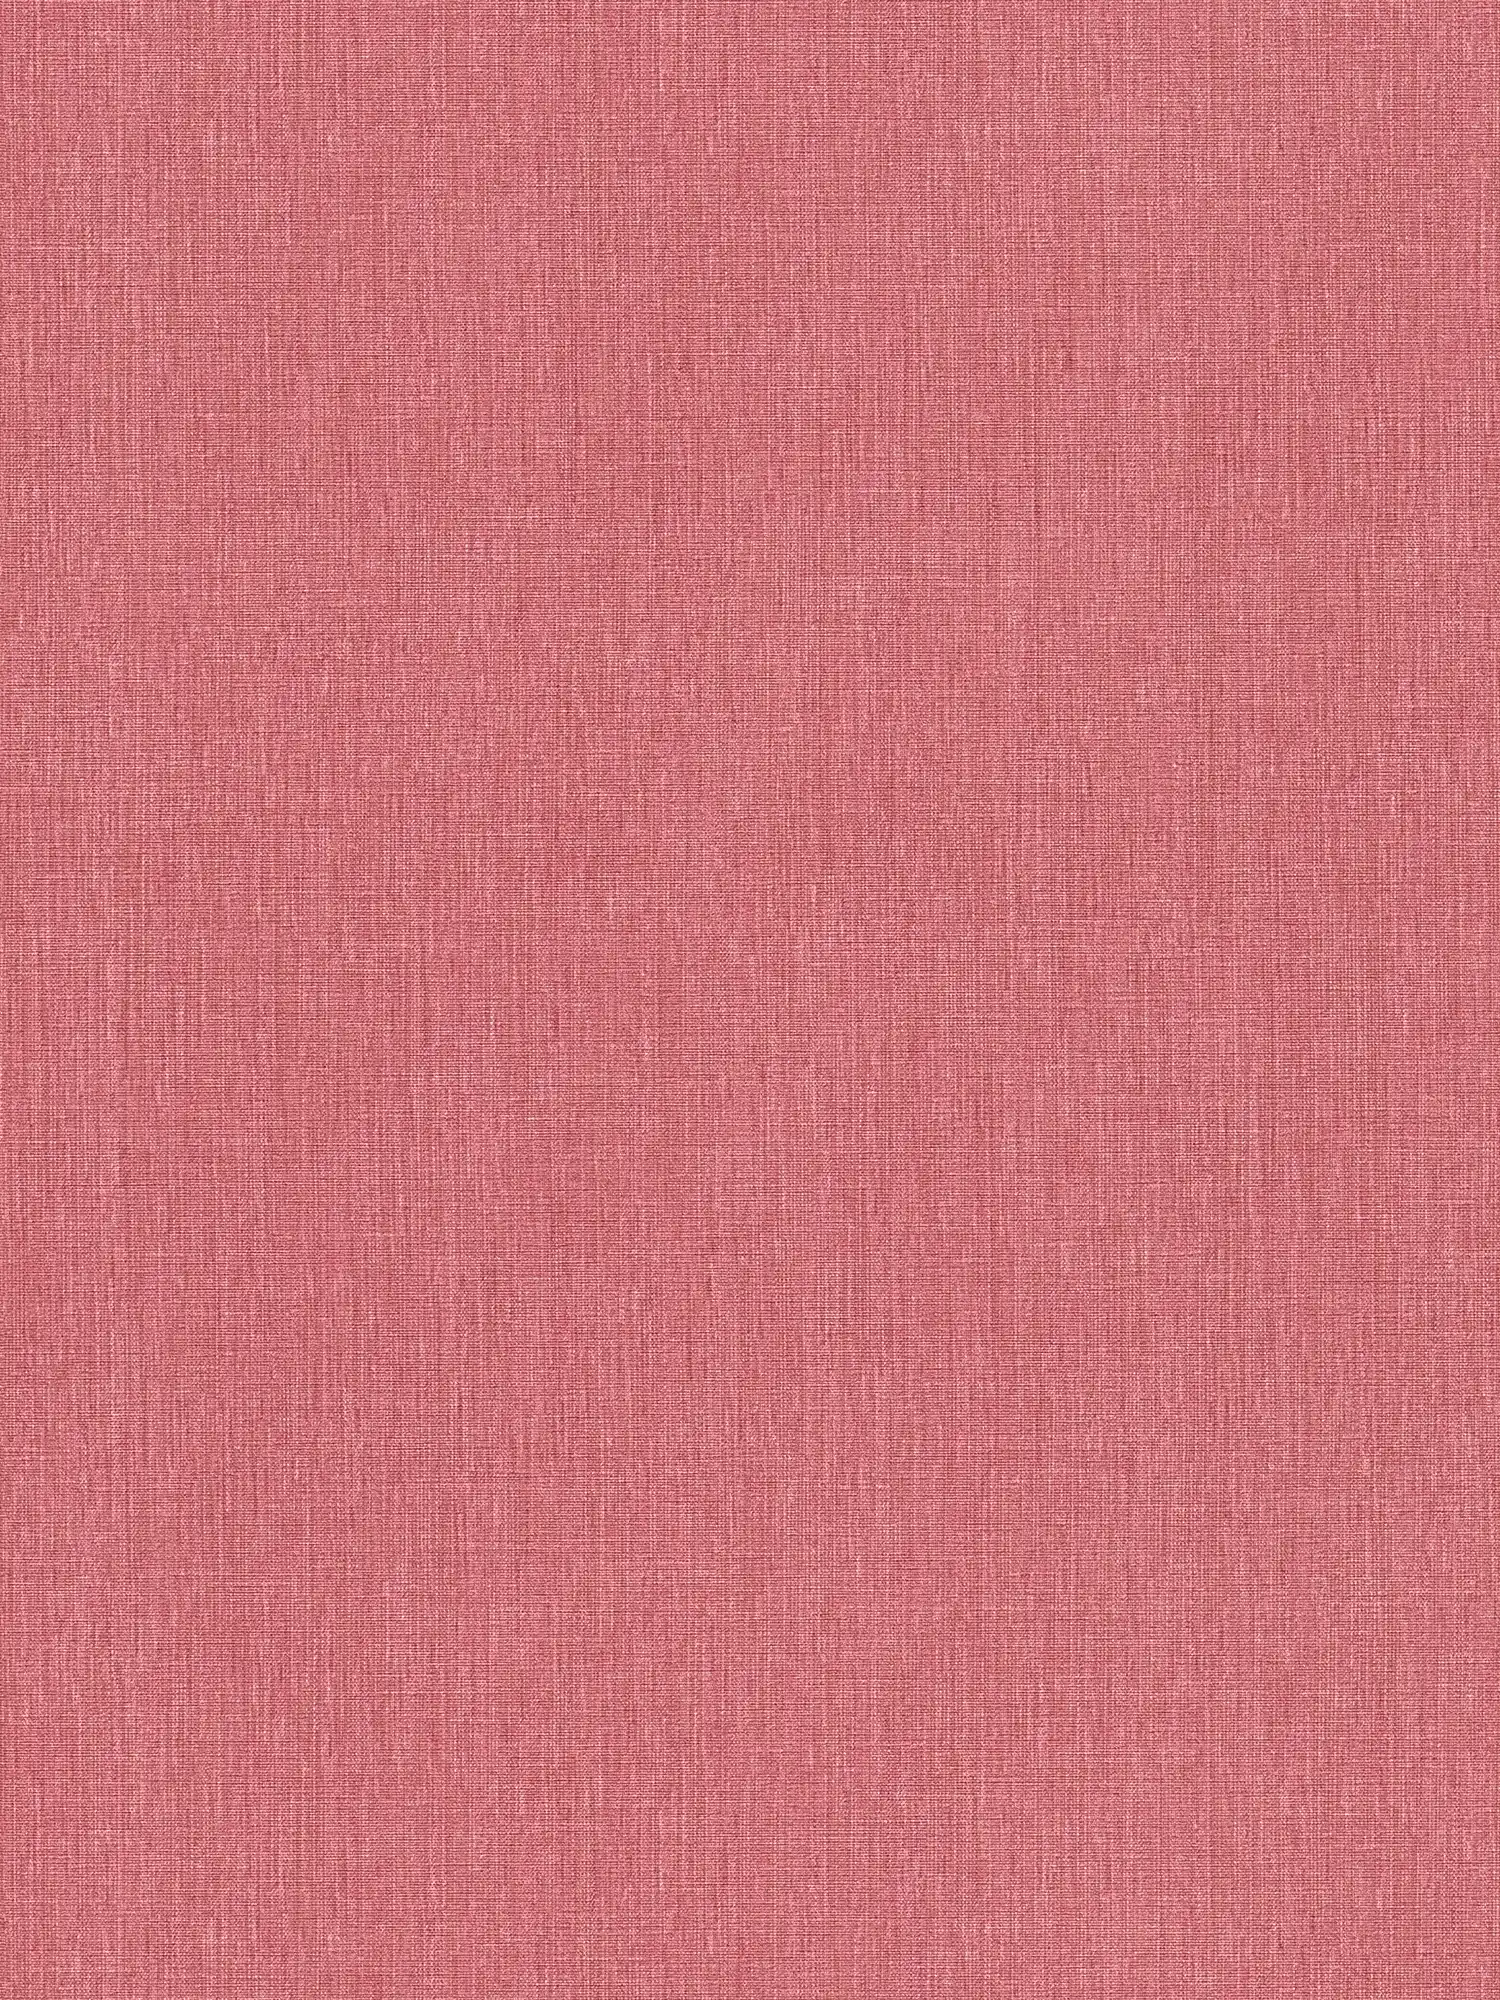 Carta da parati non tessuta a tinta unita con aspetto tessile in finitura opaca - rosso
